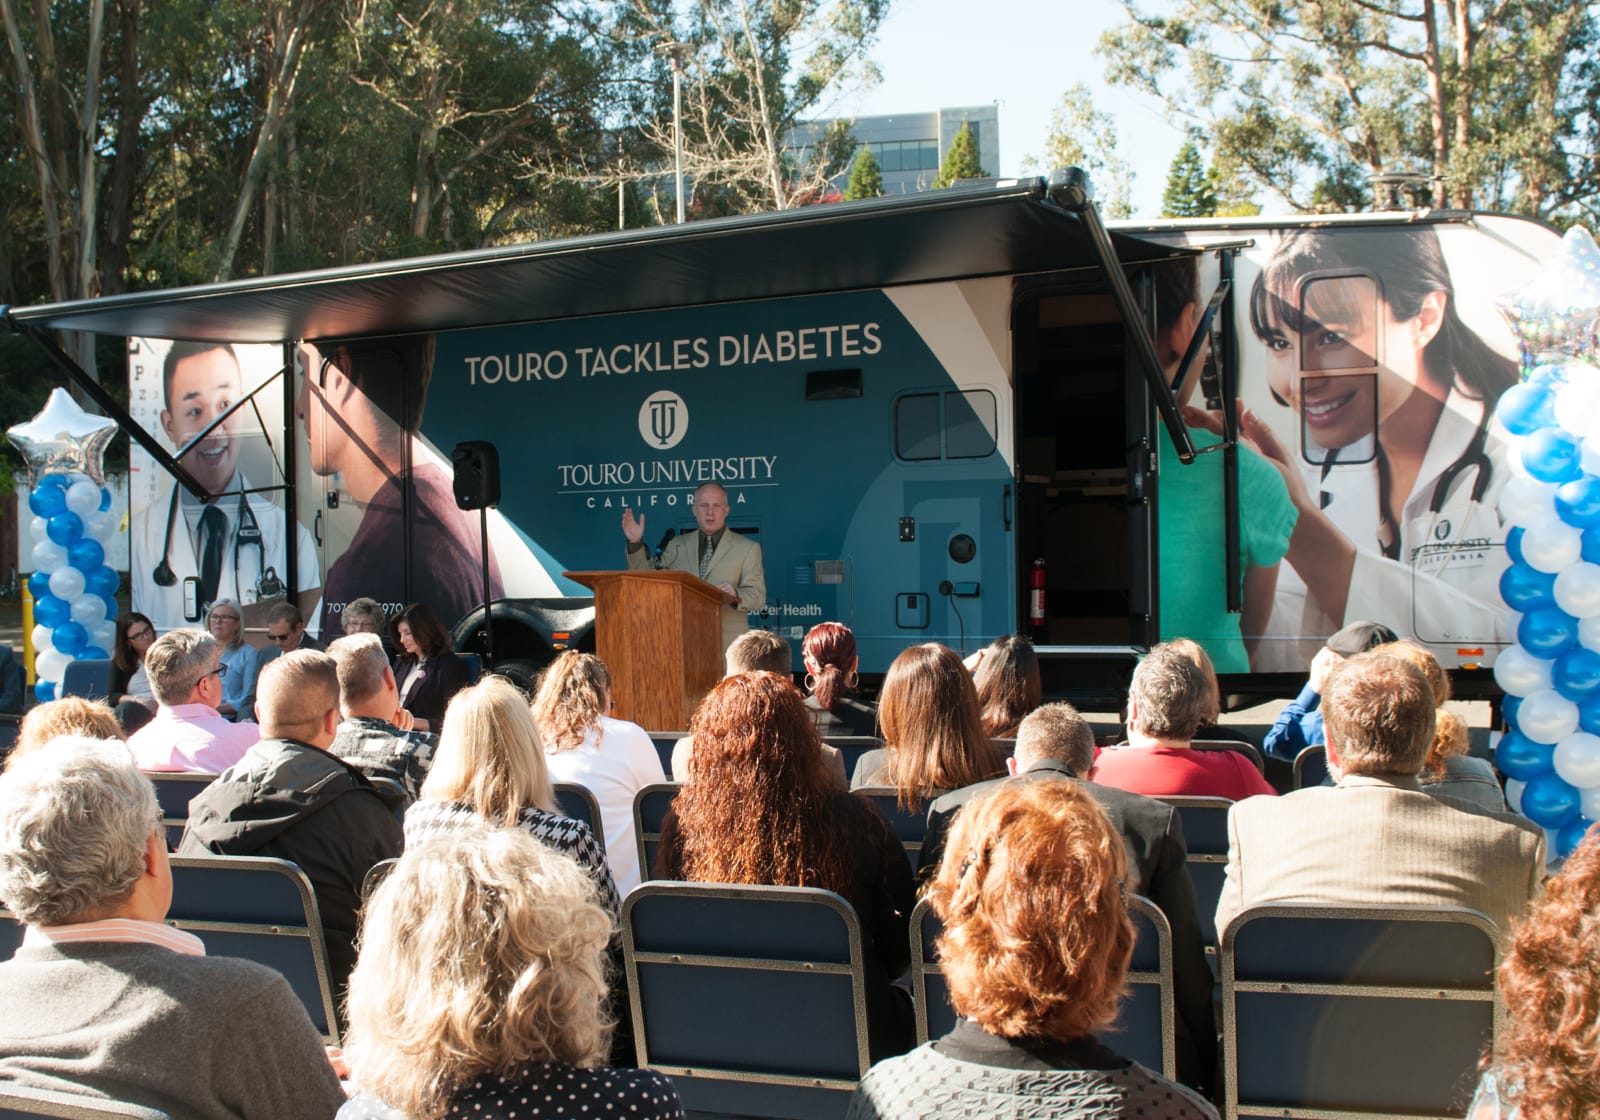 TUC Diabetes mobile unit at event